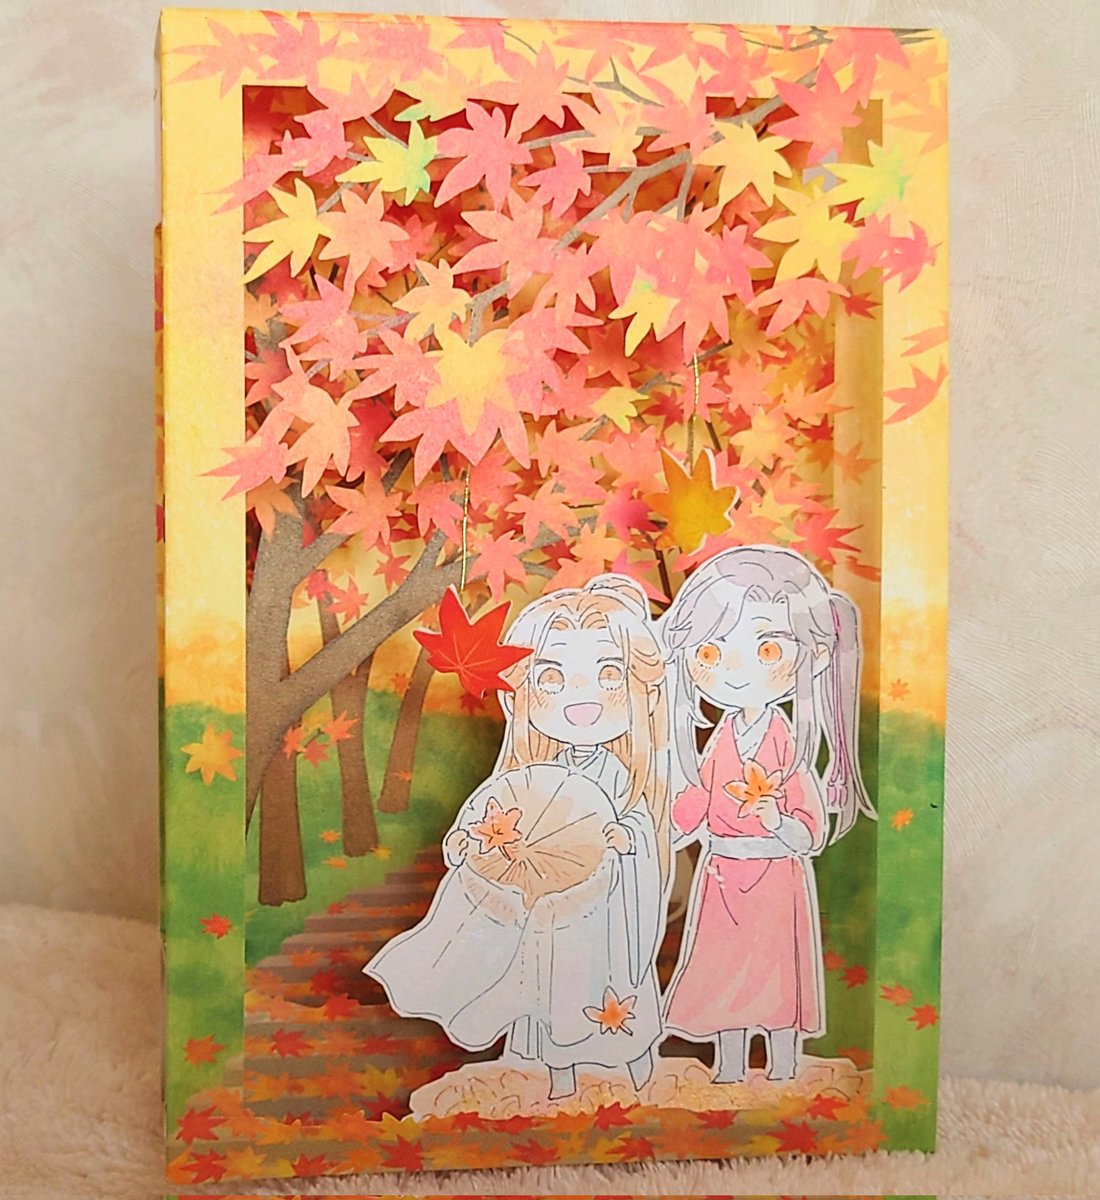 「秋なポップアップカードを得たので花怜を添えました 」|シスのイラスト